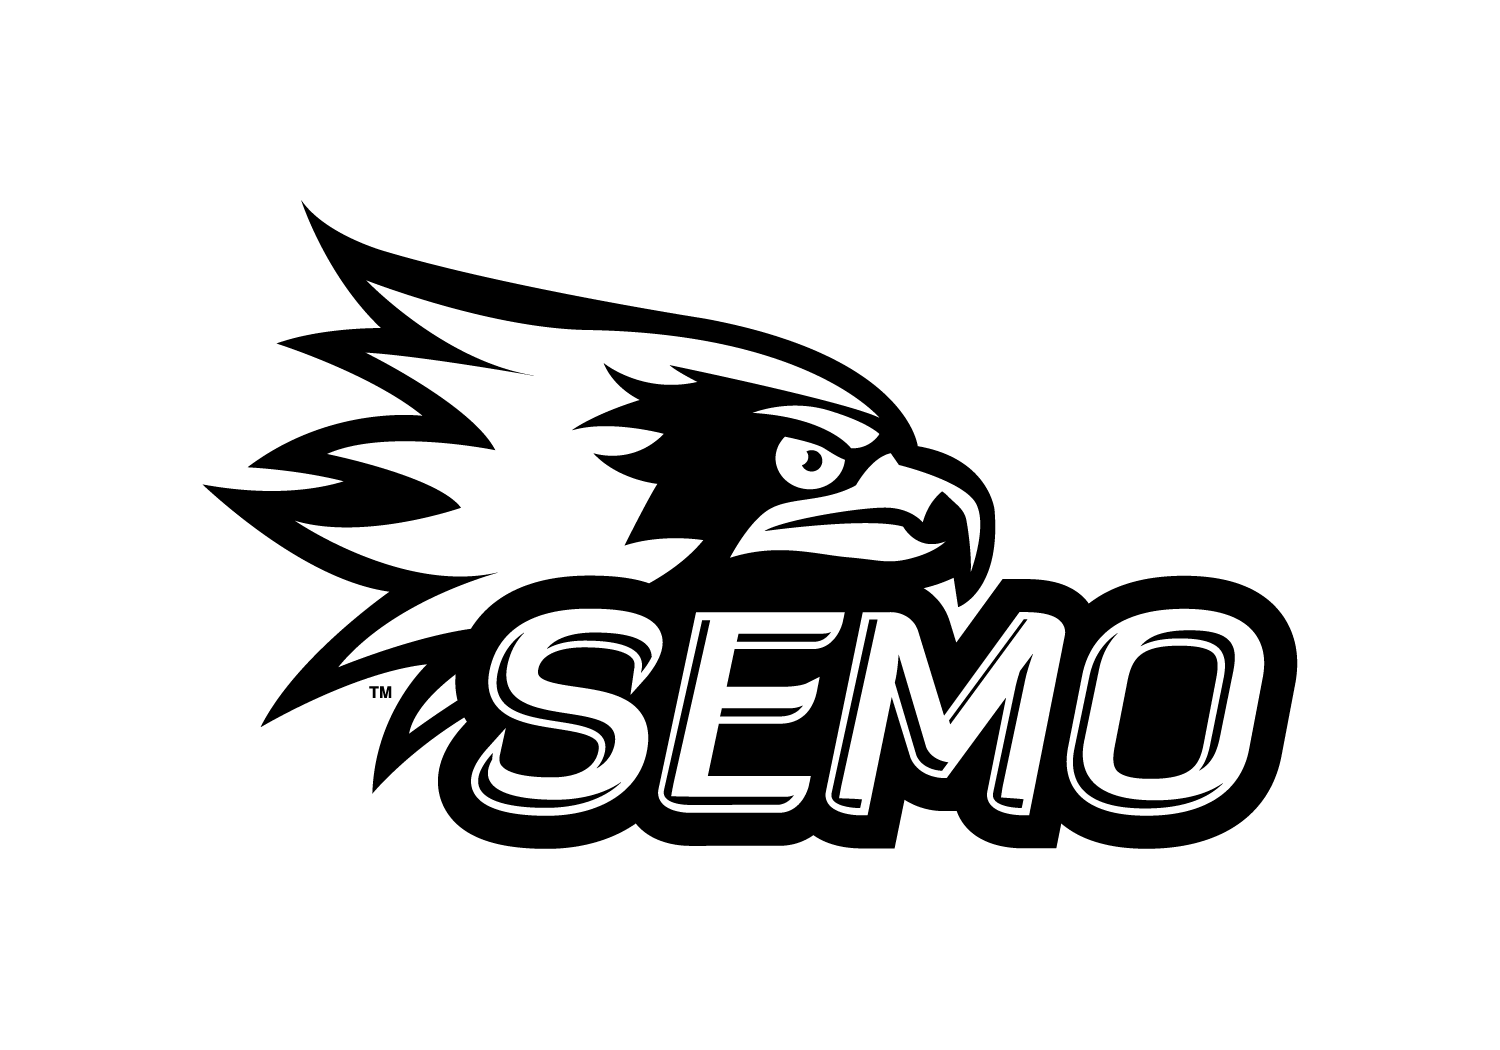 semo spirit redhawk logo